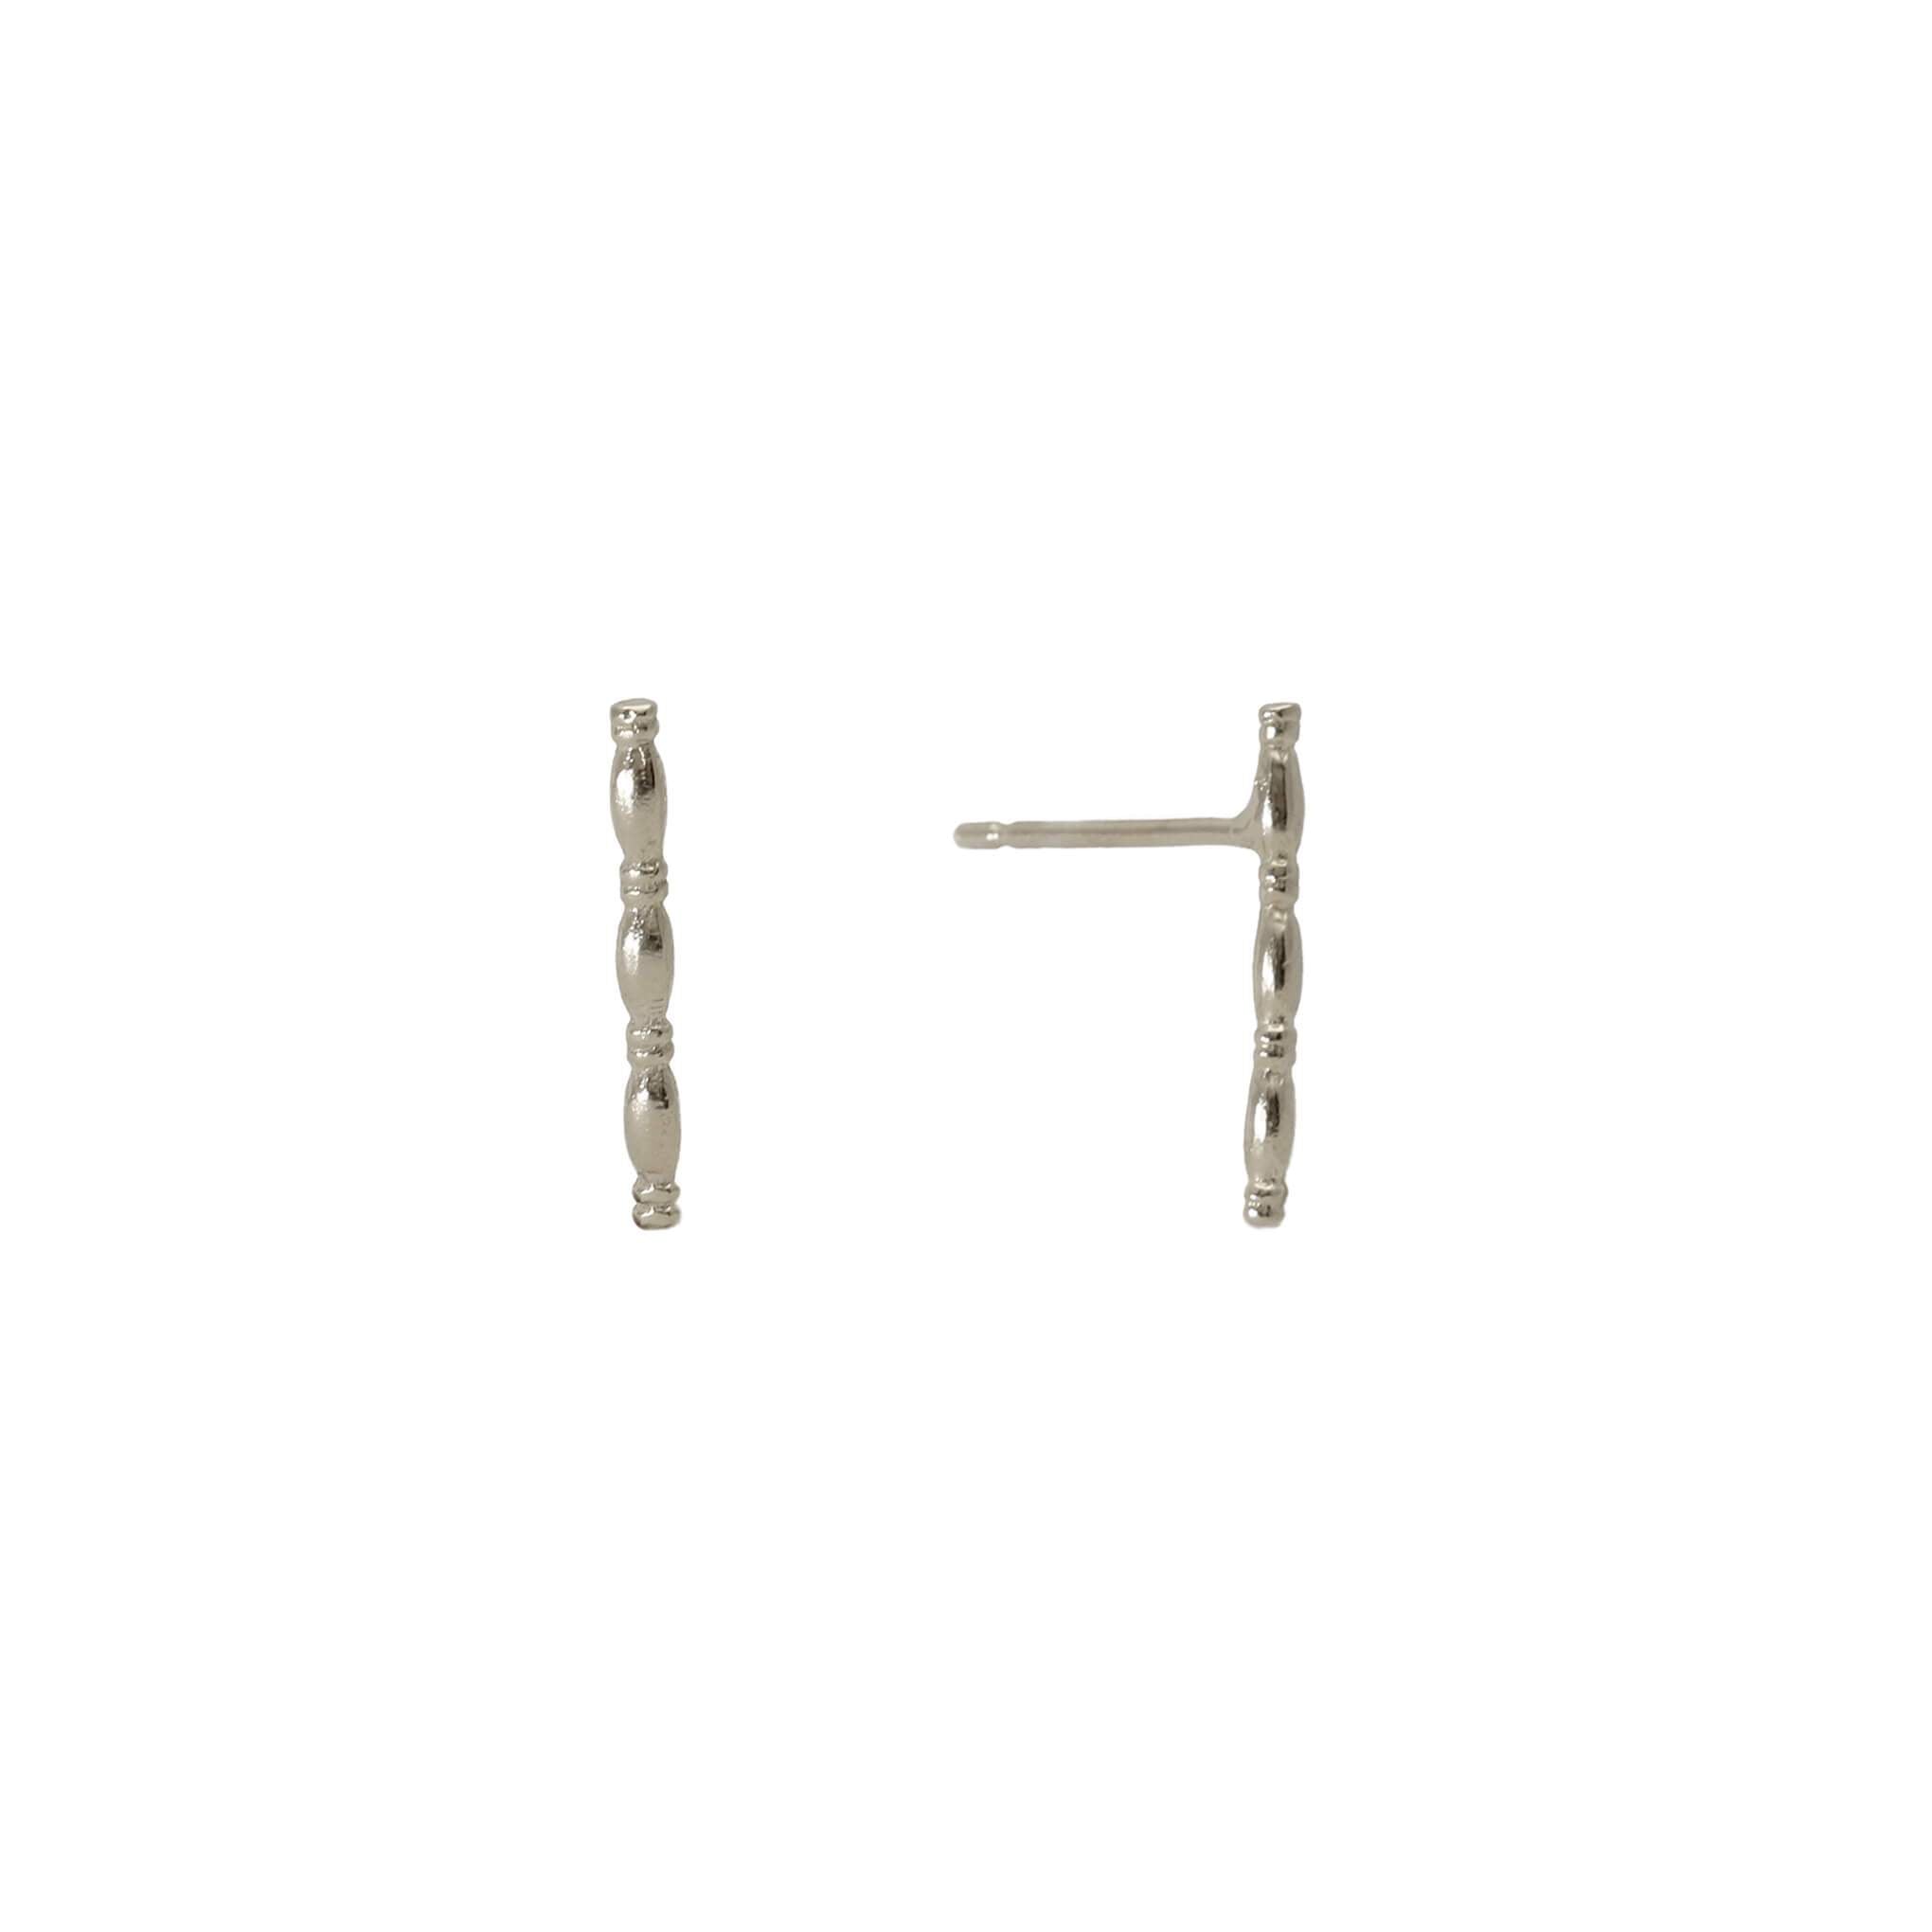 Patterned silver stick stud earrings